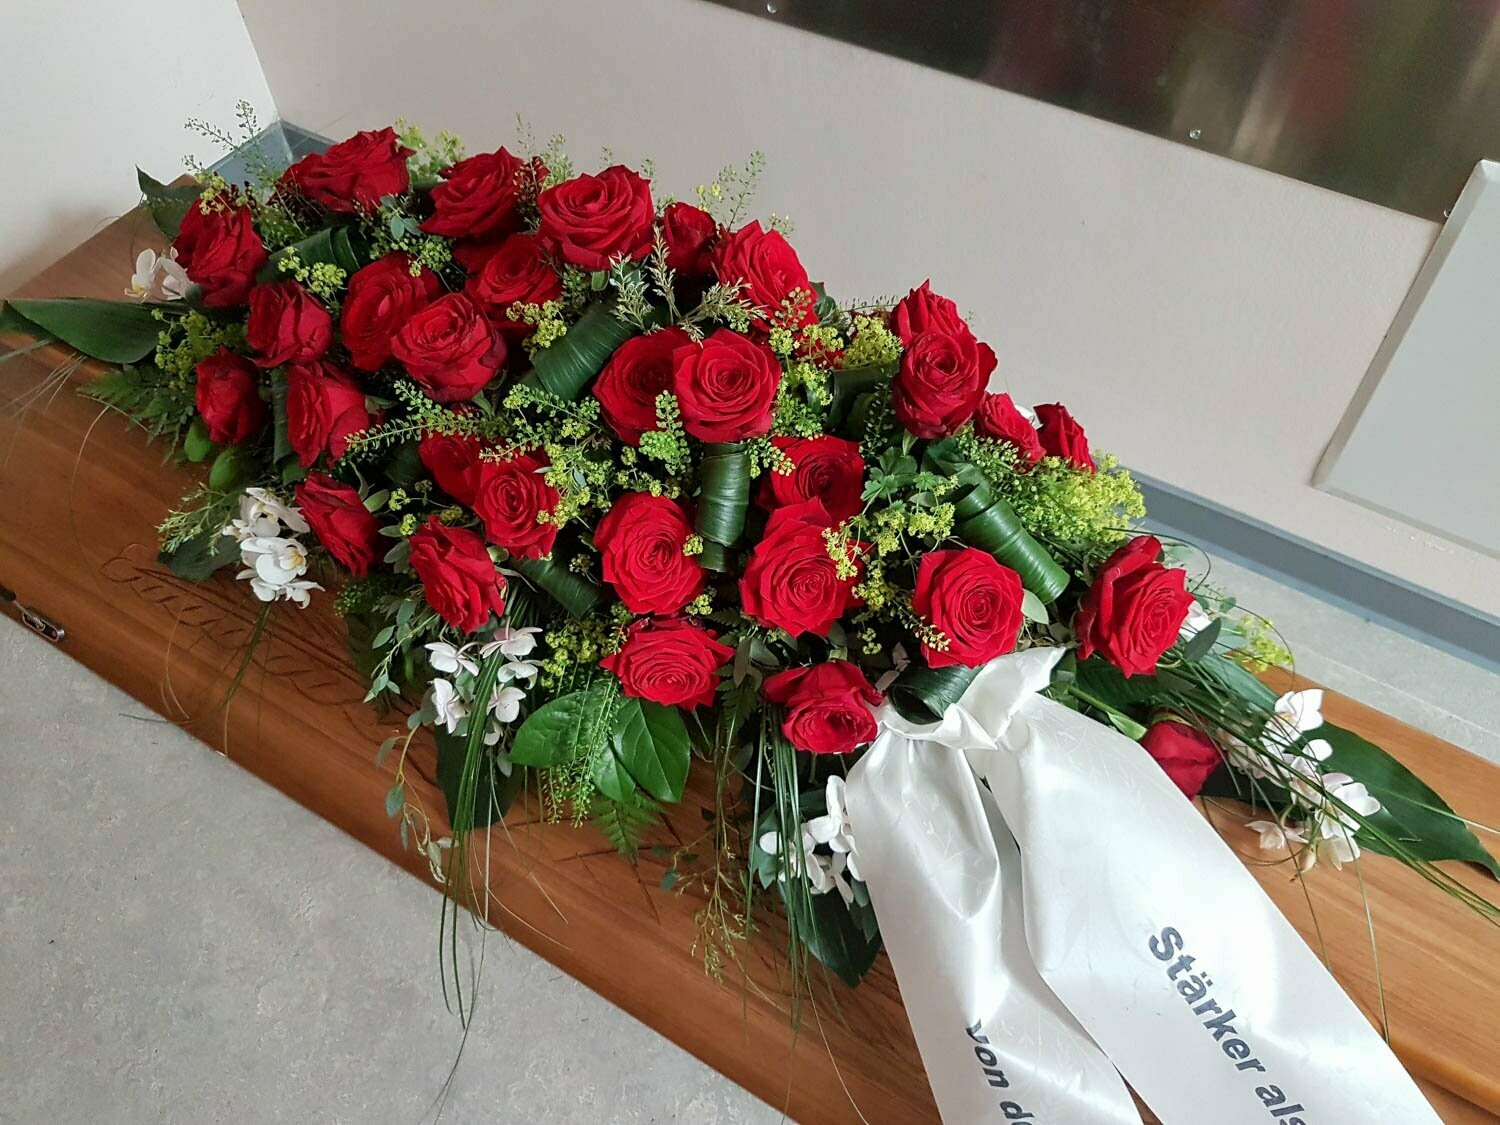 Sargschmuck - längliches Bukett mit roten Rosen und weißen Orchideen